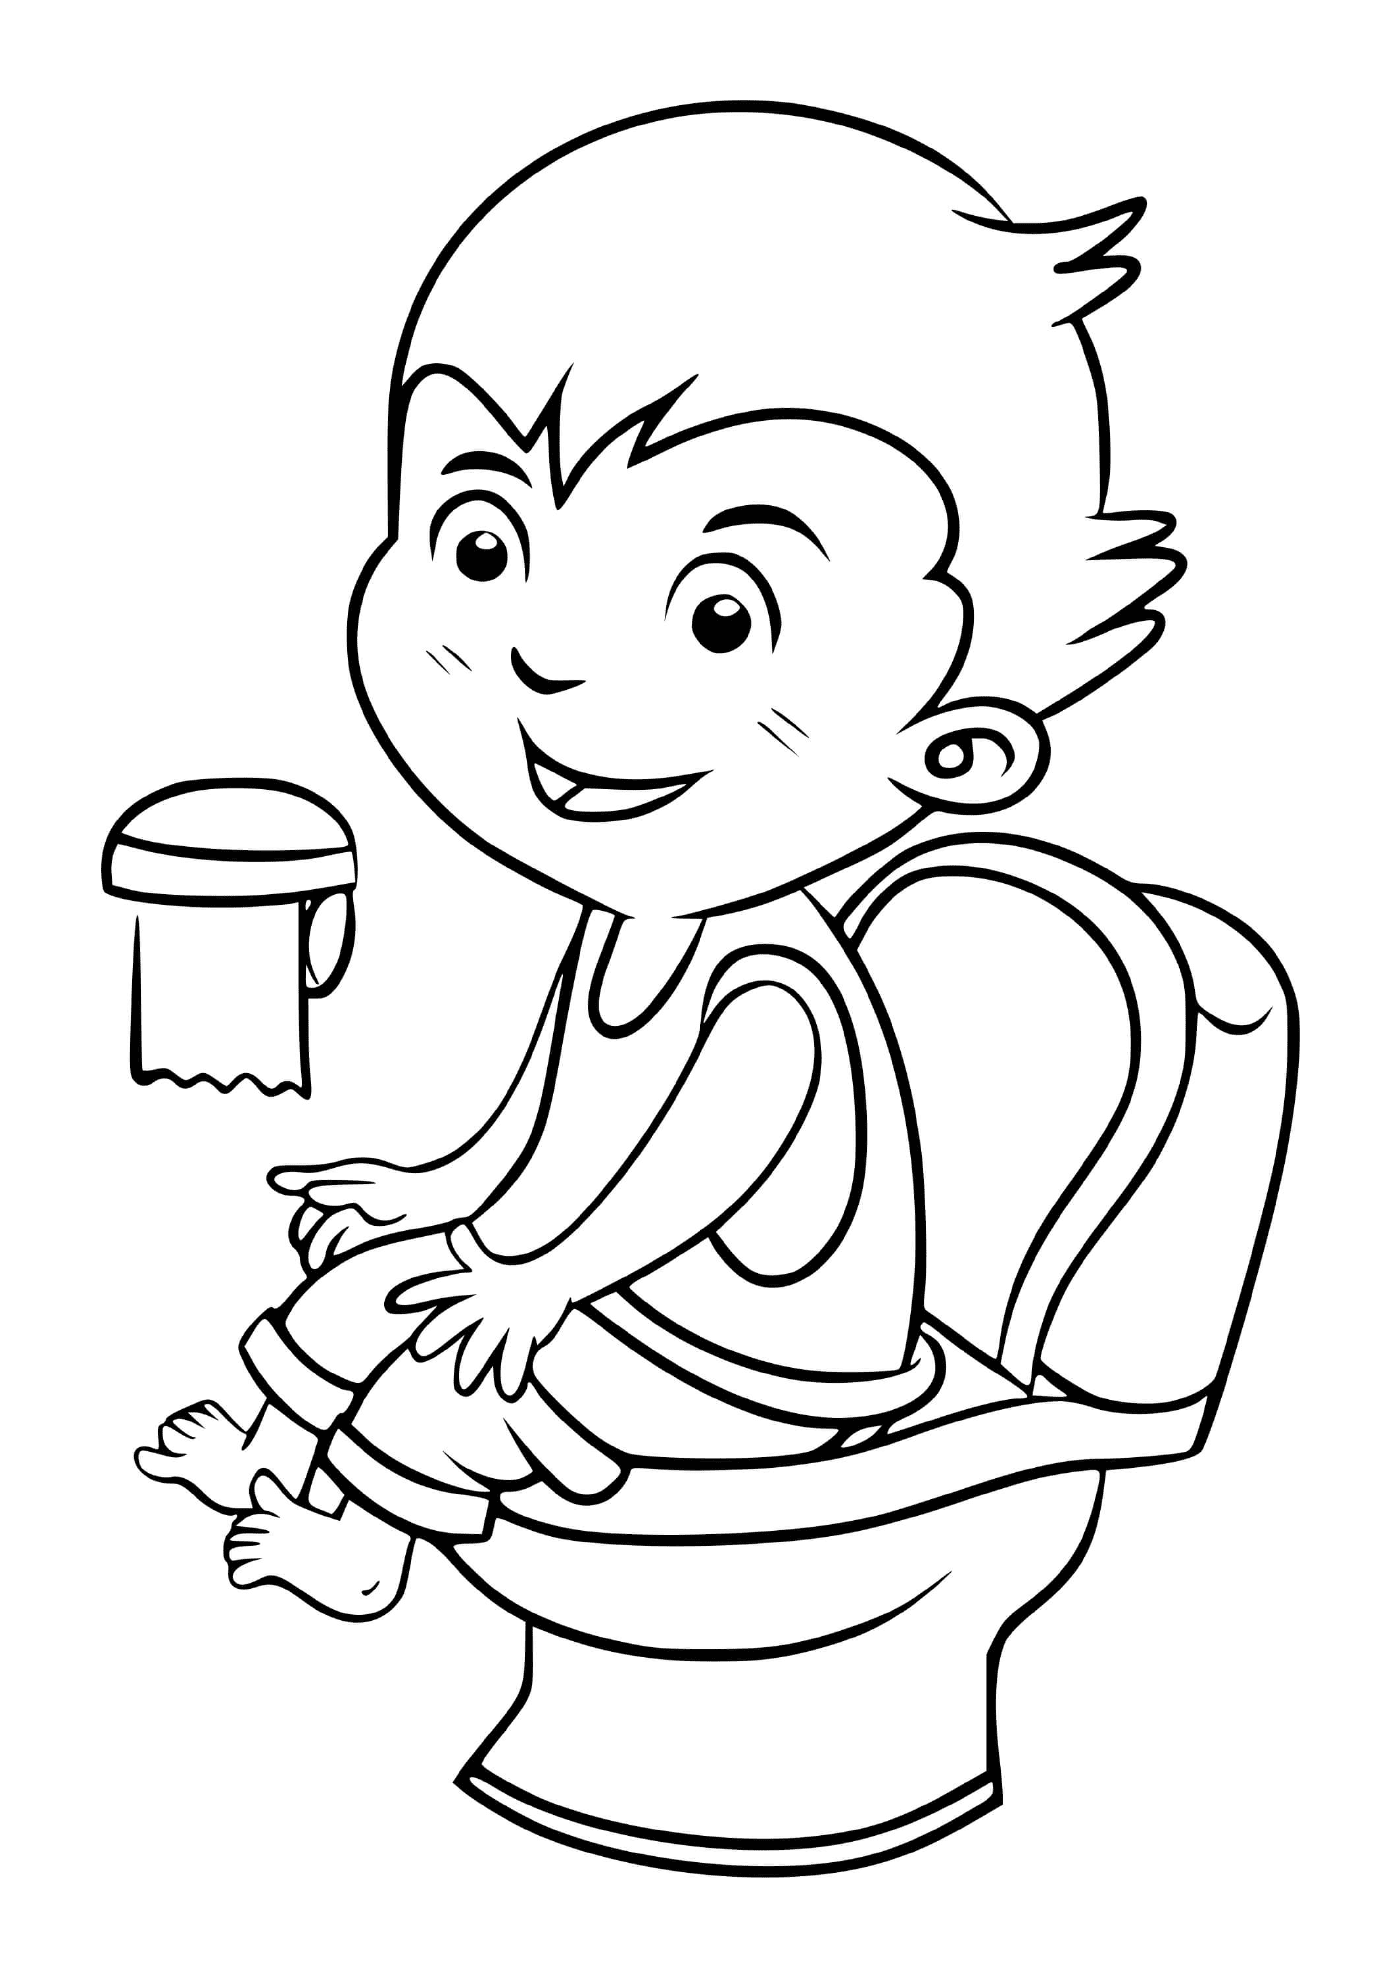 un enfant au toilette pour faire ses besoins et rester propre